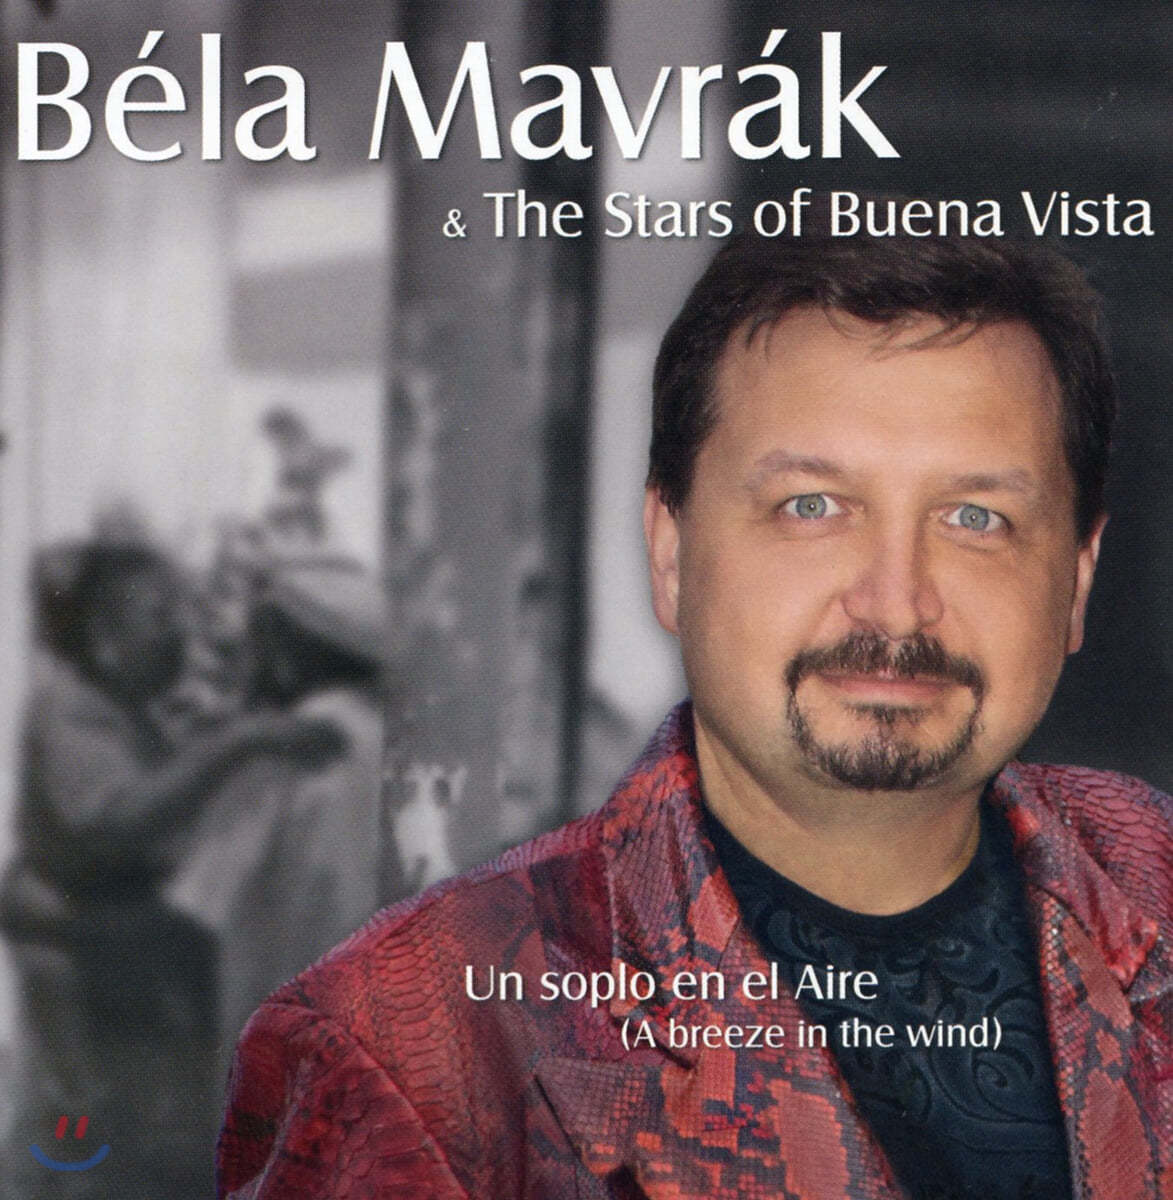 벨러 머브라크와 부에나 비스타의 스타들 (A breeze in the Wind: Bela Mavrak and The Stars of Buena Vista) 